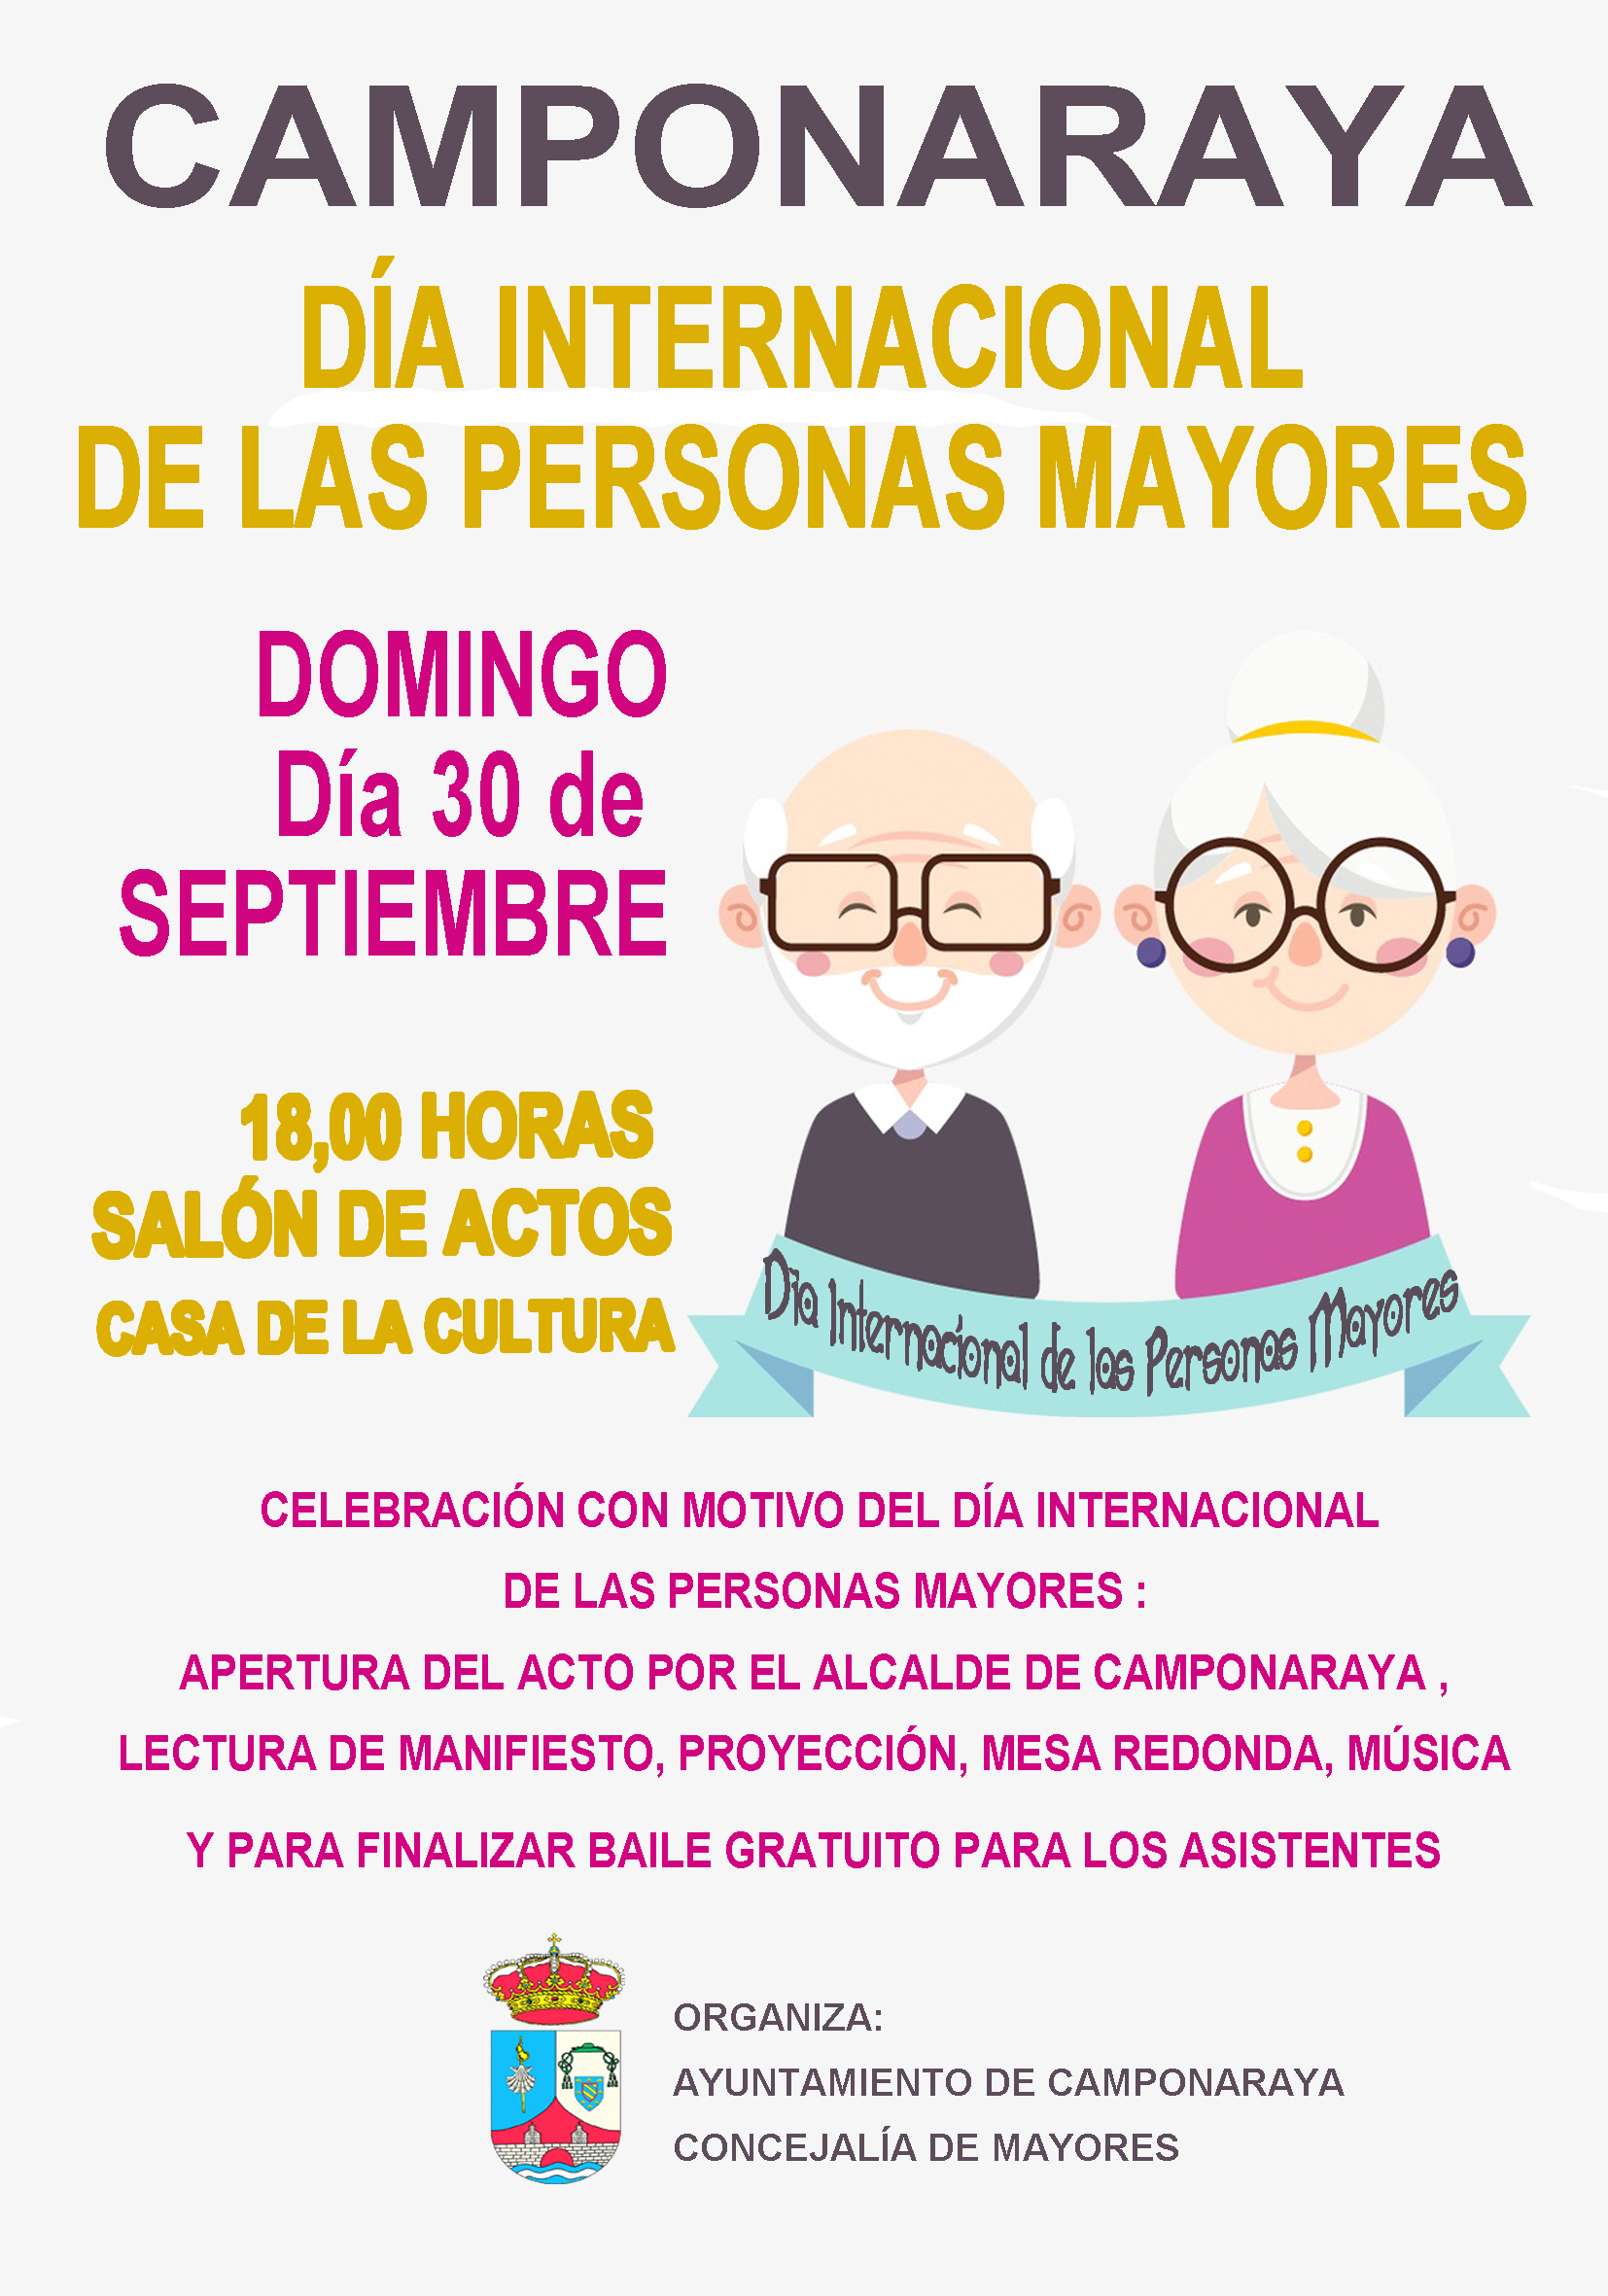 El domingo Camponaraya celebra el 'Día Internacional de las personas mayores' homenajeando a las personas mayores 1